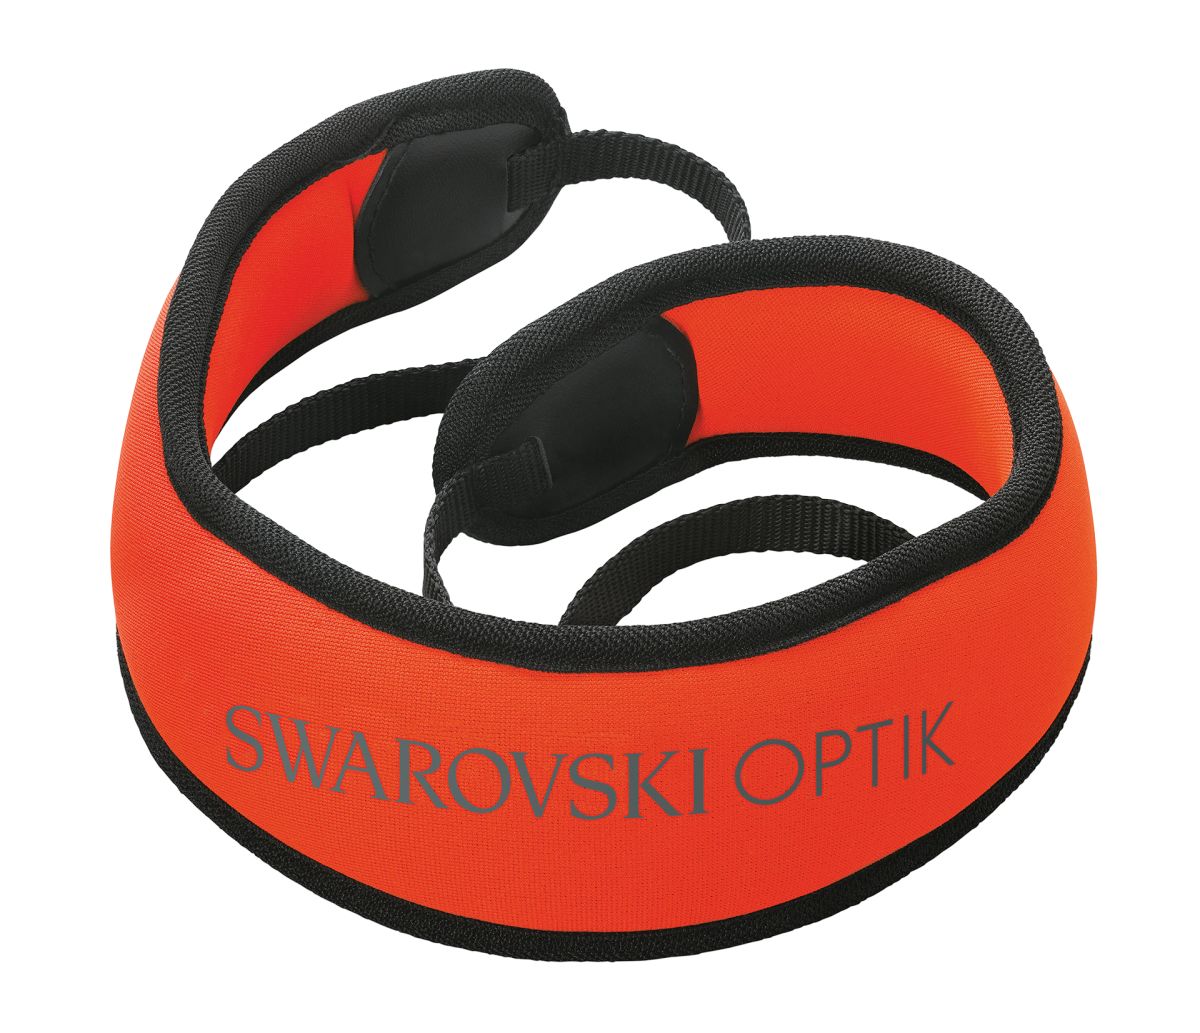 www.swarovskioptik.com